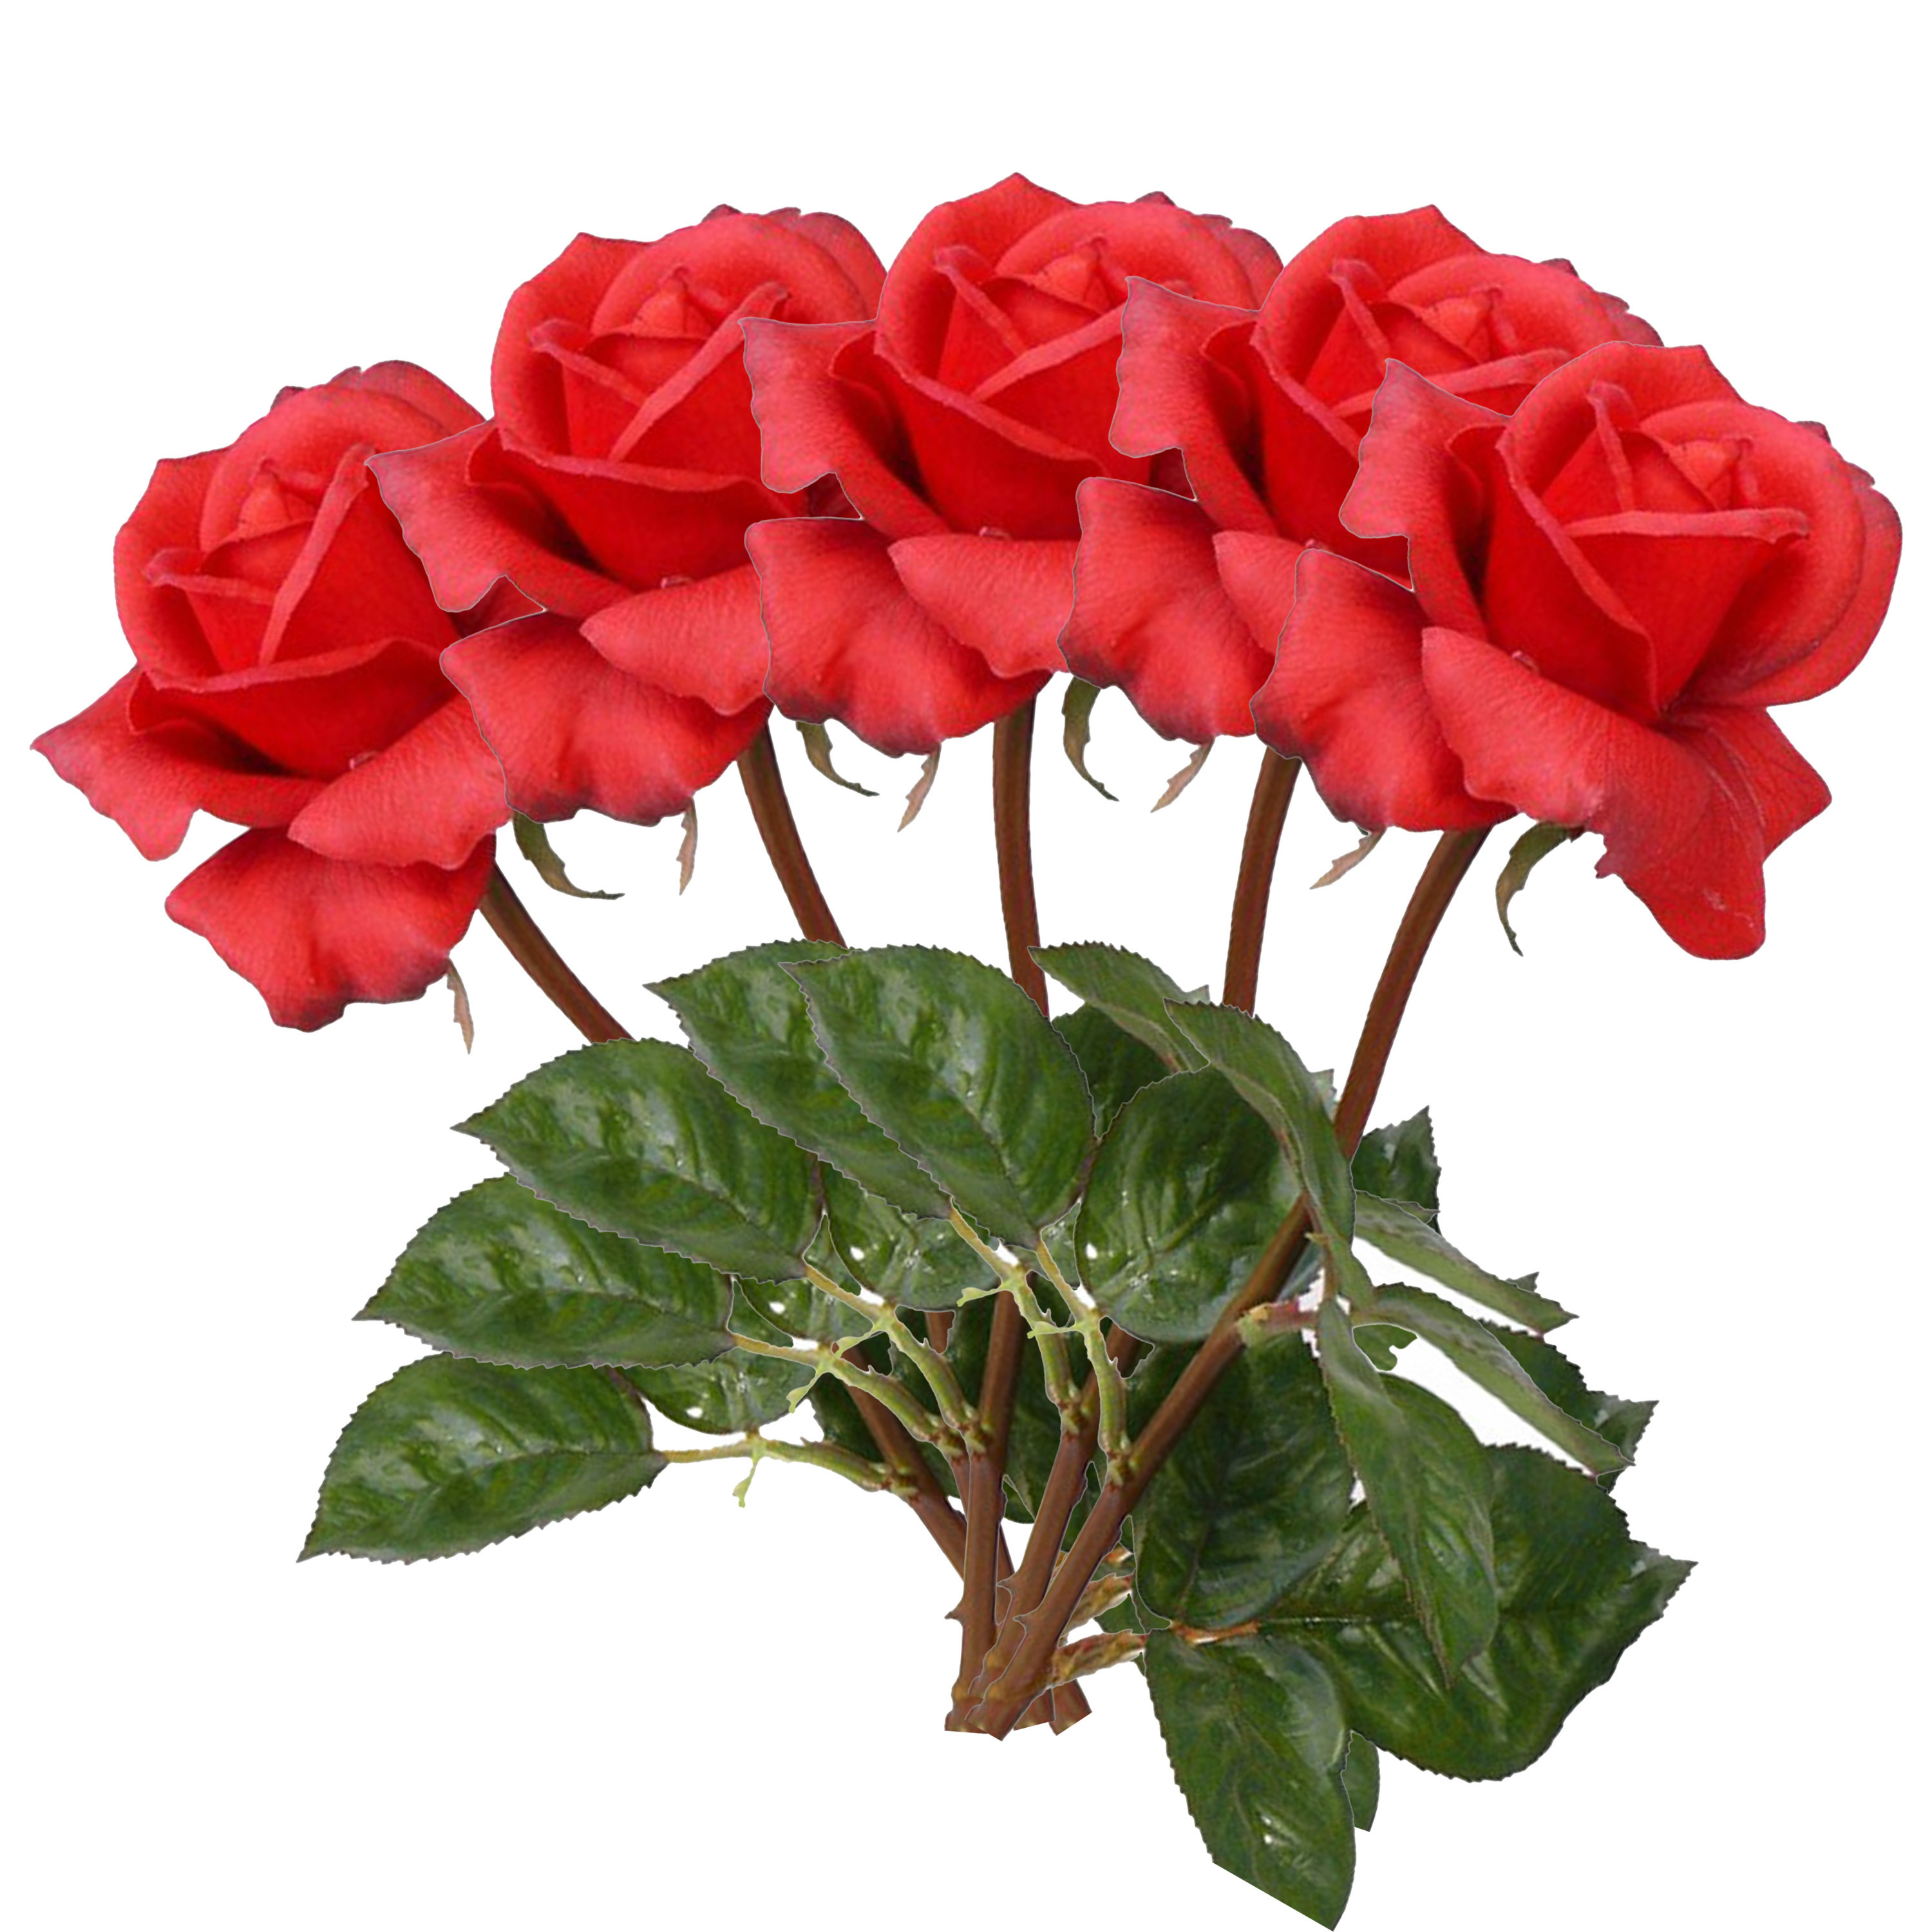 Afbeelding van Kunstbloem roos Caroline - 5x - rood - 70 cm - zijde - kunststof steel - decoratie bloemen